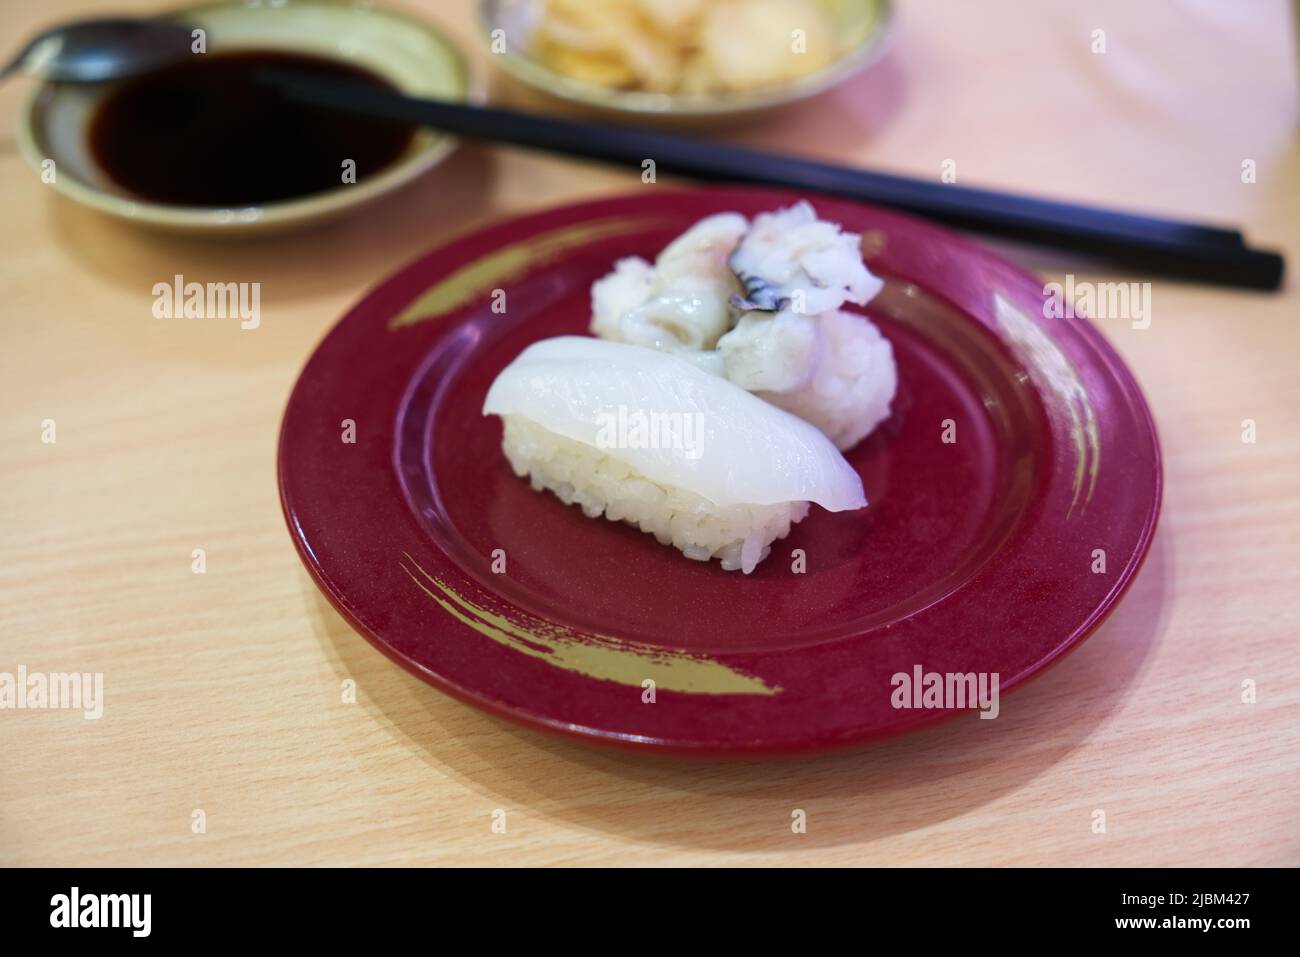 IKA Nigiri Sushi oder Sushi frischer Tintenfisch, Sushi Tintenfisch auf rotem Gericht mit unscharfen Essstäbchen, Sojasauce oder Shoyu und Ingwer. Stockfoto